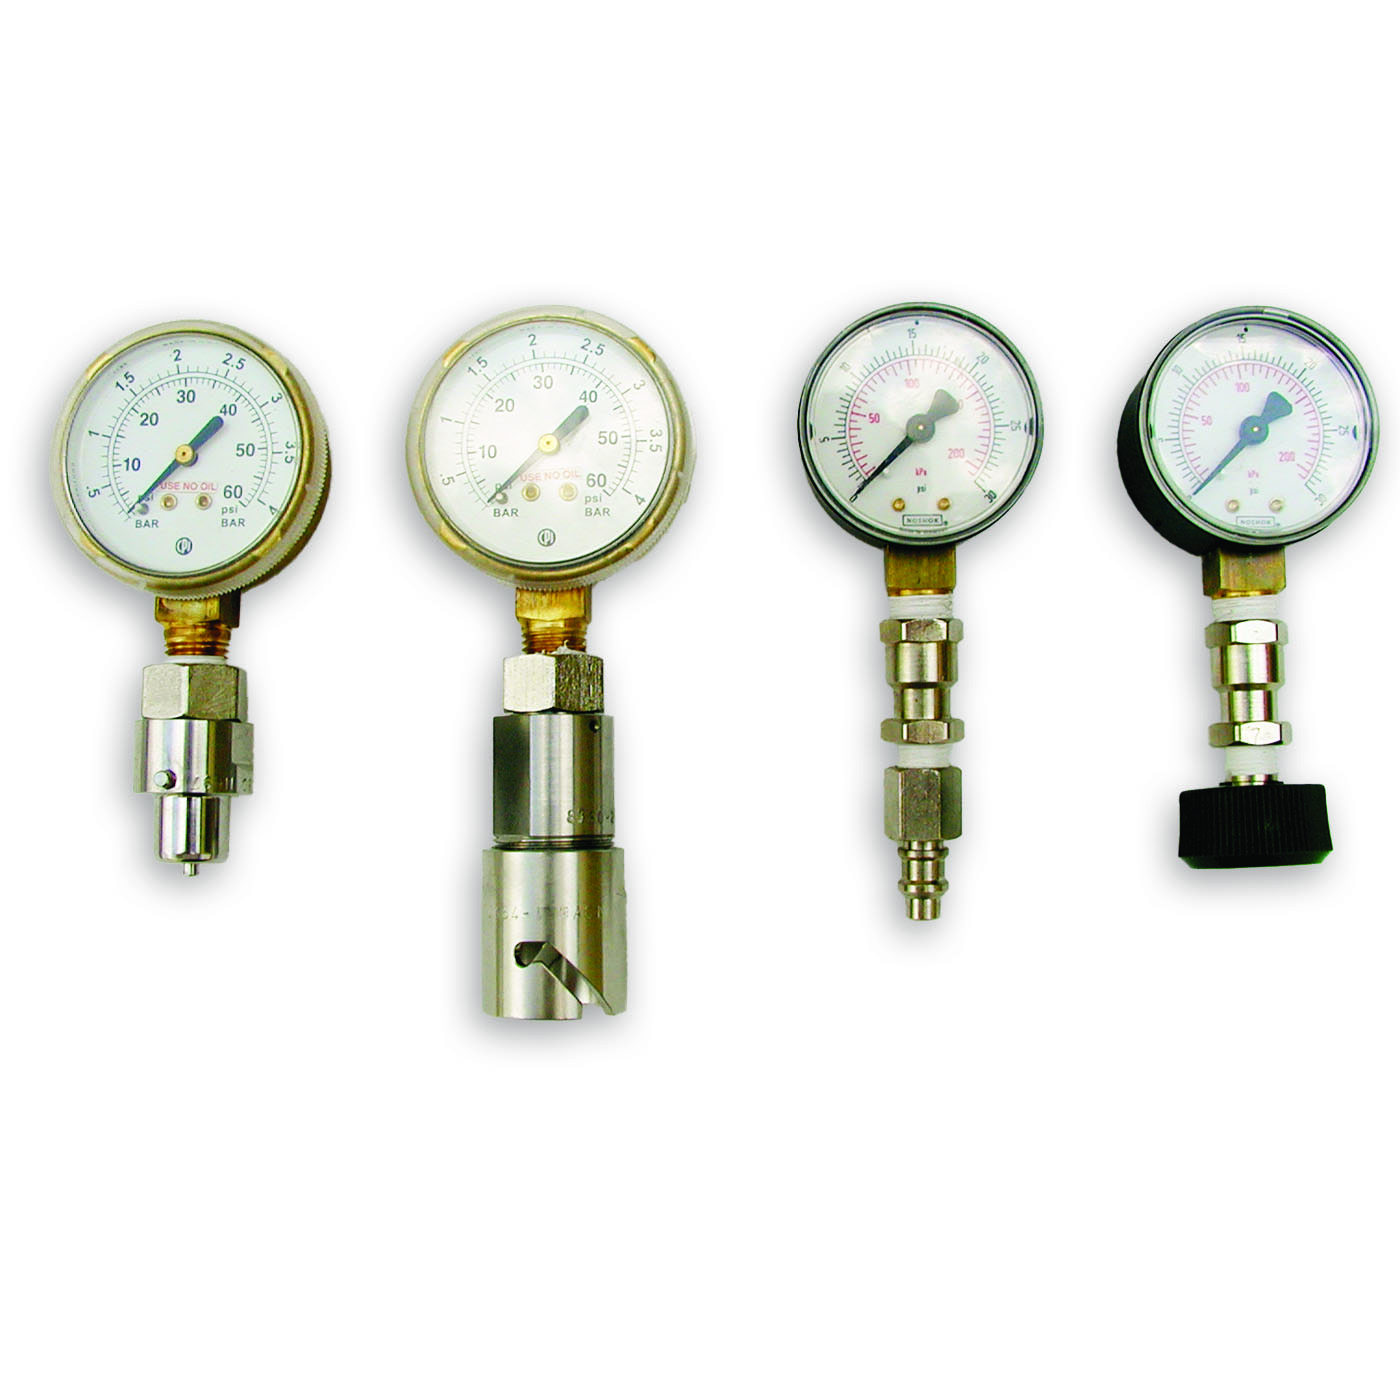 dealer test gauges and pressure gauges for home care oxygen systems